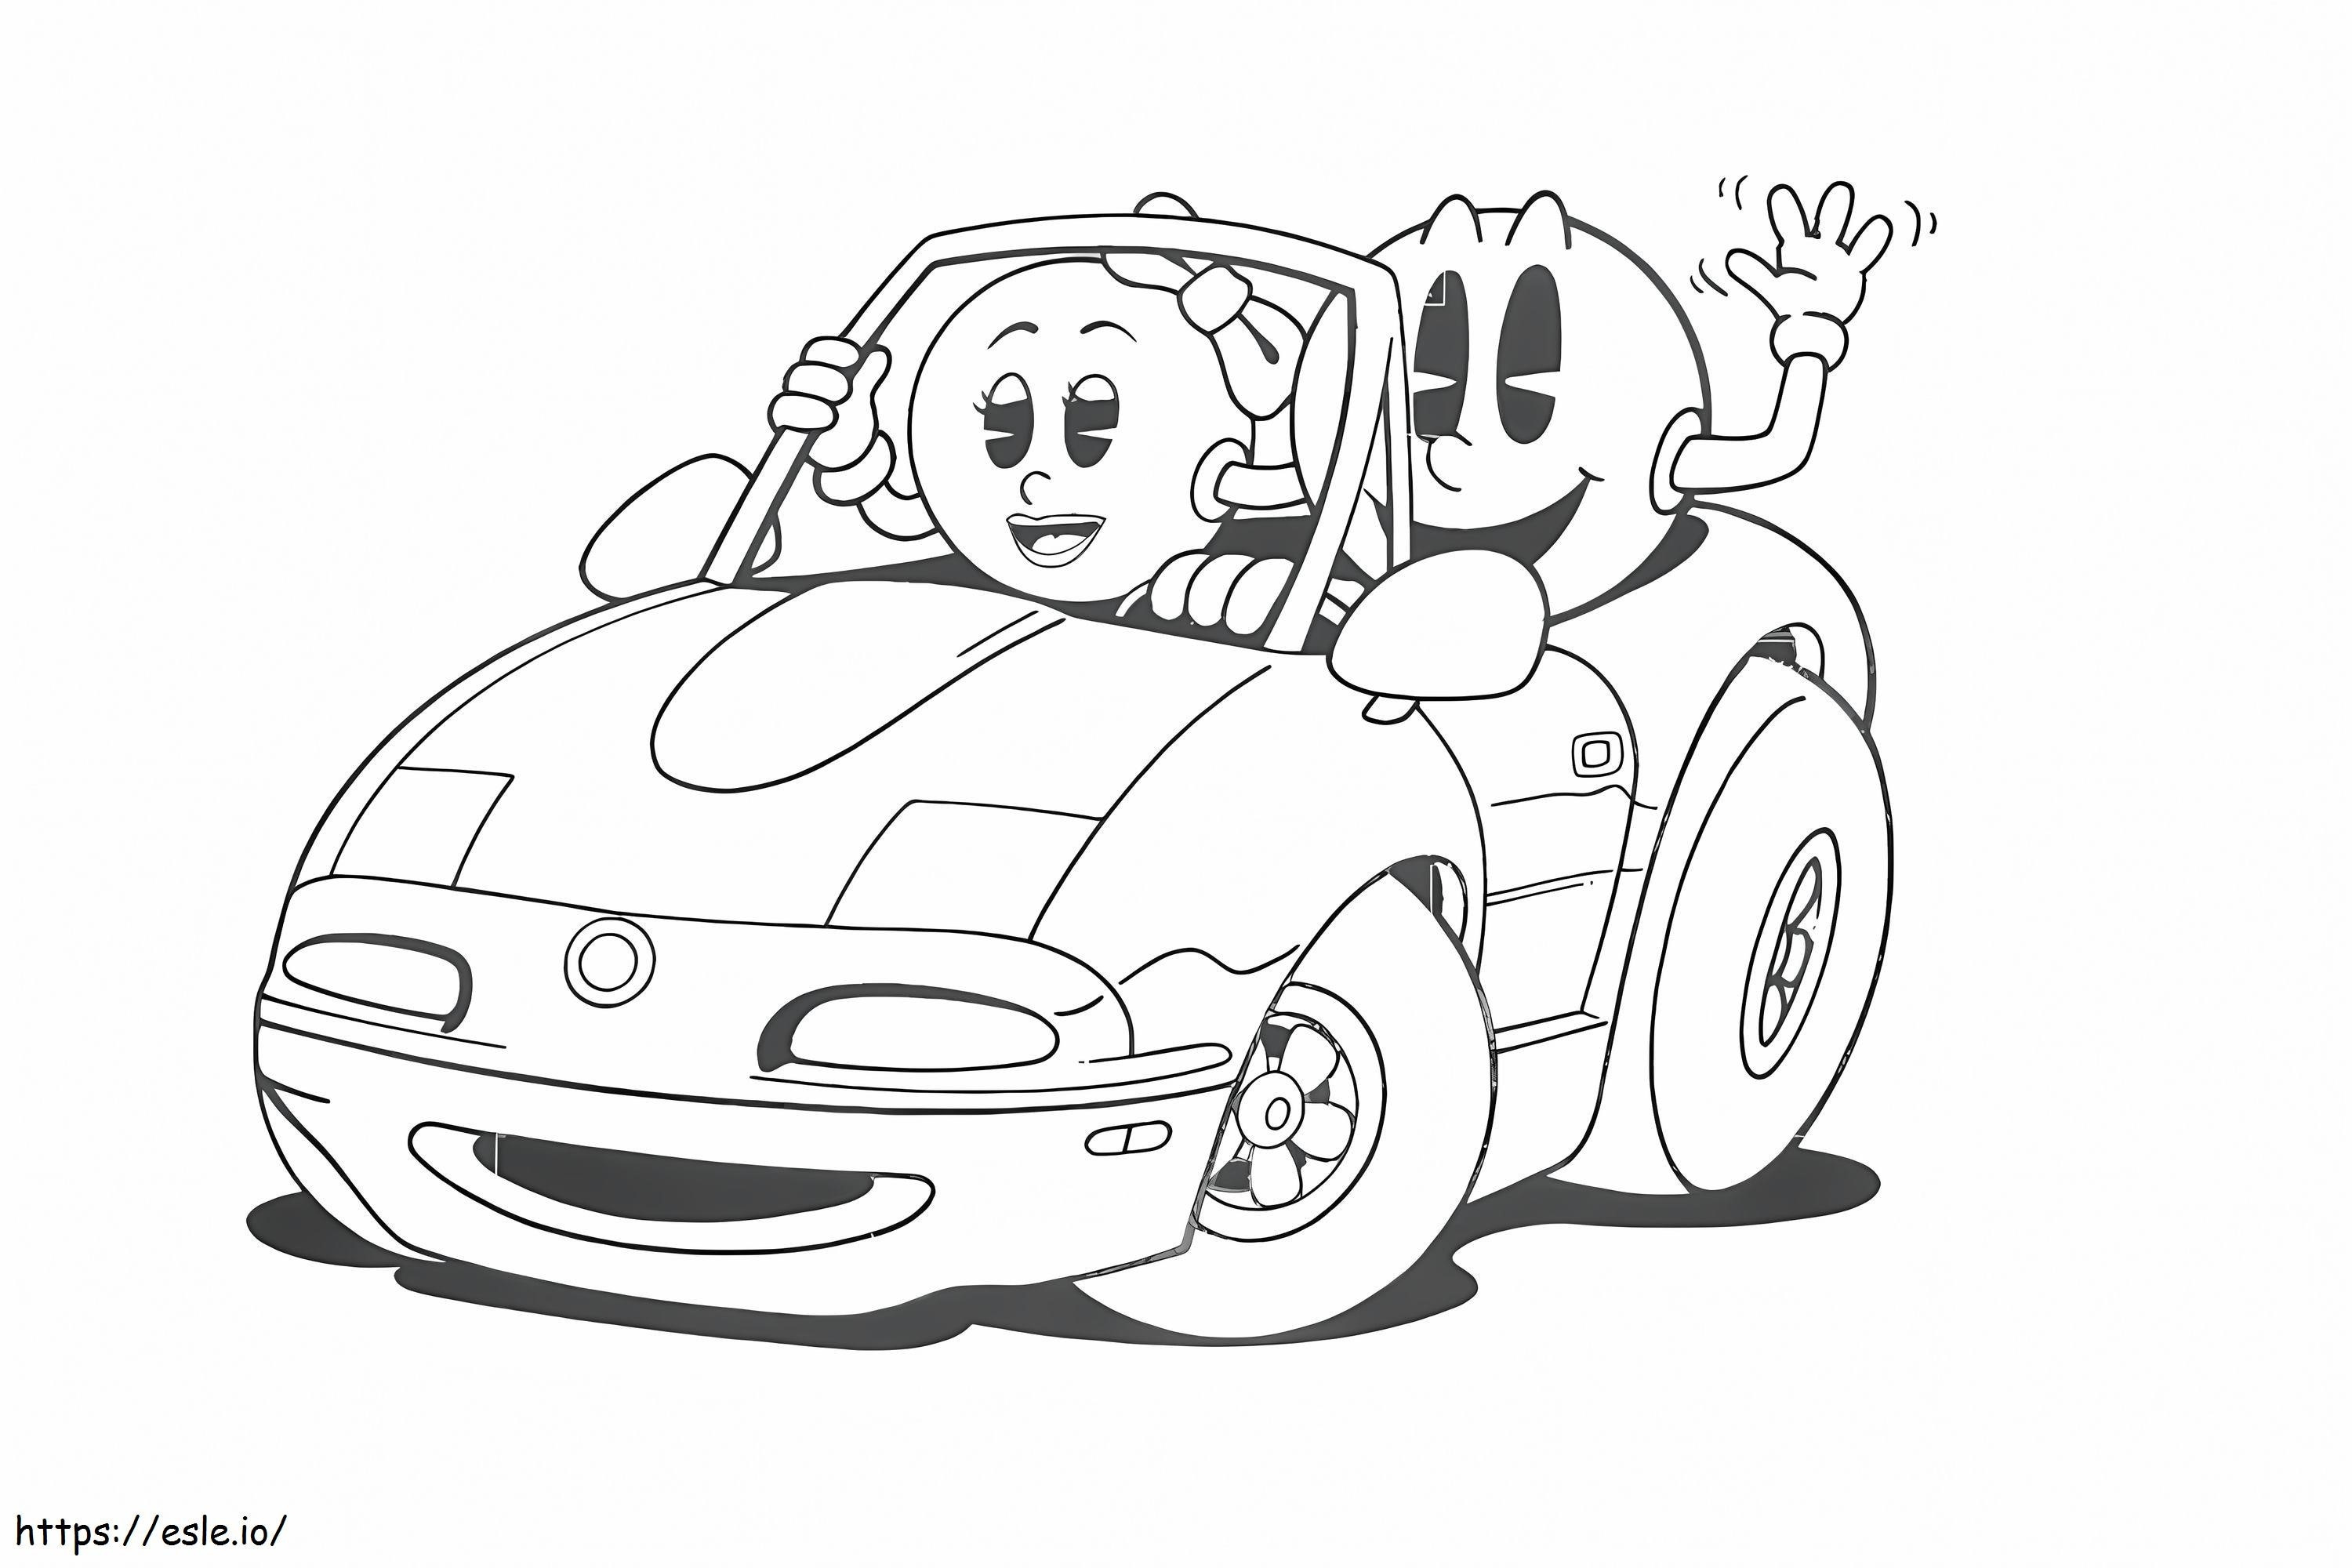 Pacman, MS Pacman ile Araba Sürüyor boyama